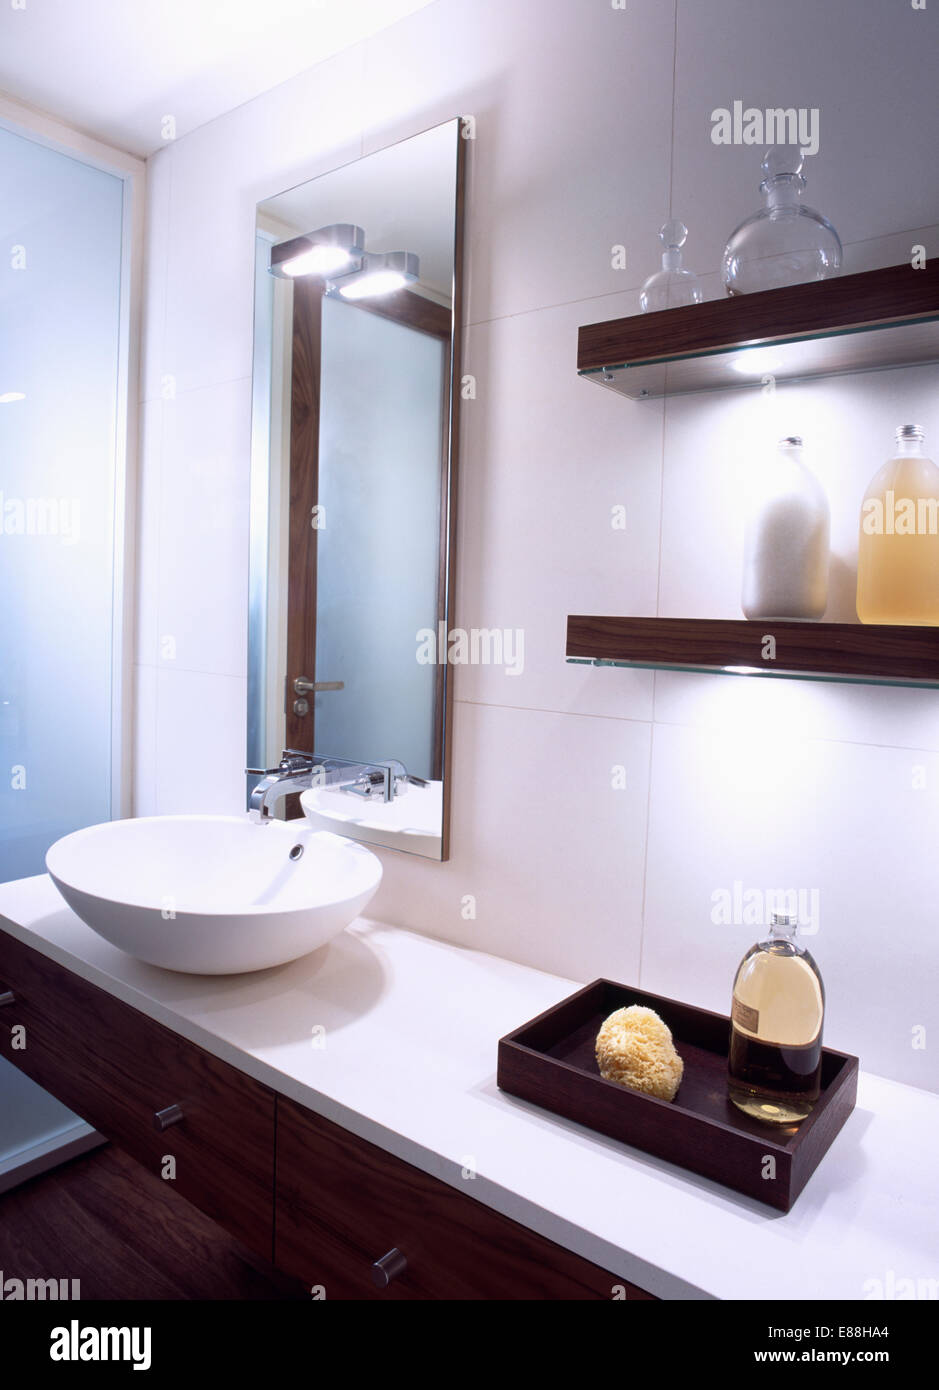 Spiegel über Schüssel Becken auf Waschtischunterbau mit Schwamm und Bad Öl in hölzerne Aufbewahrungsbox unten einfache Wand-Regale Stockfoto